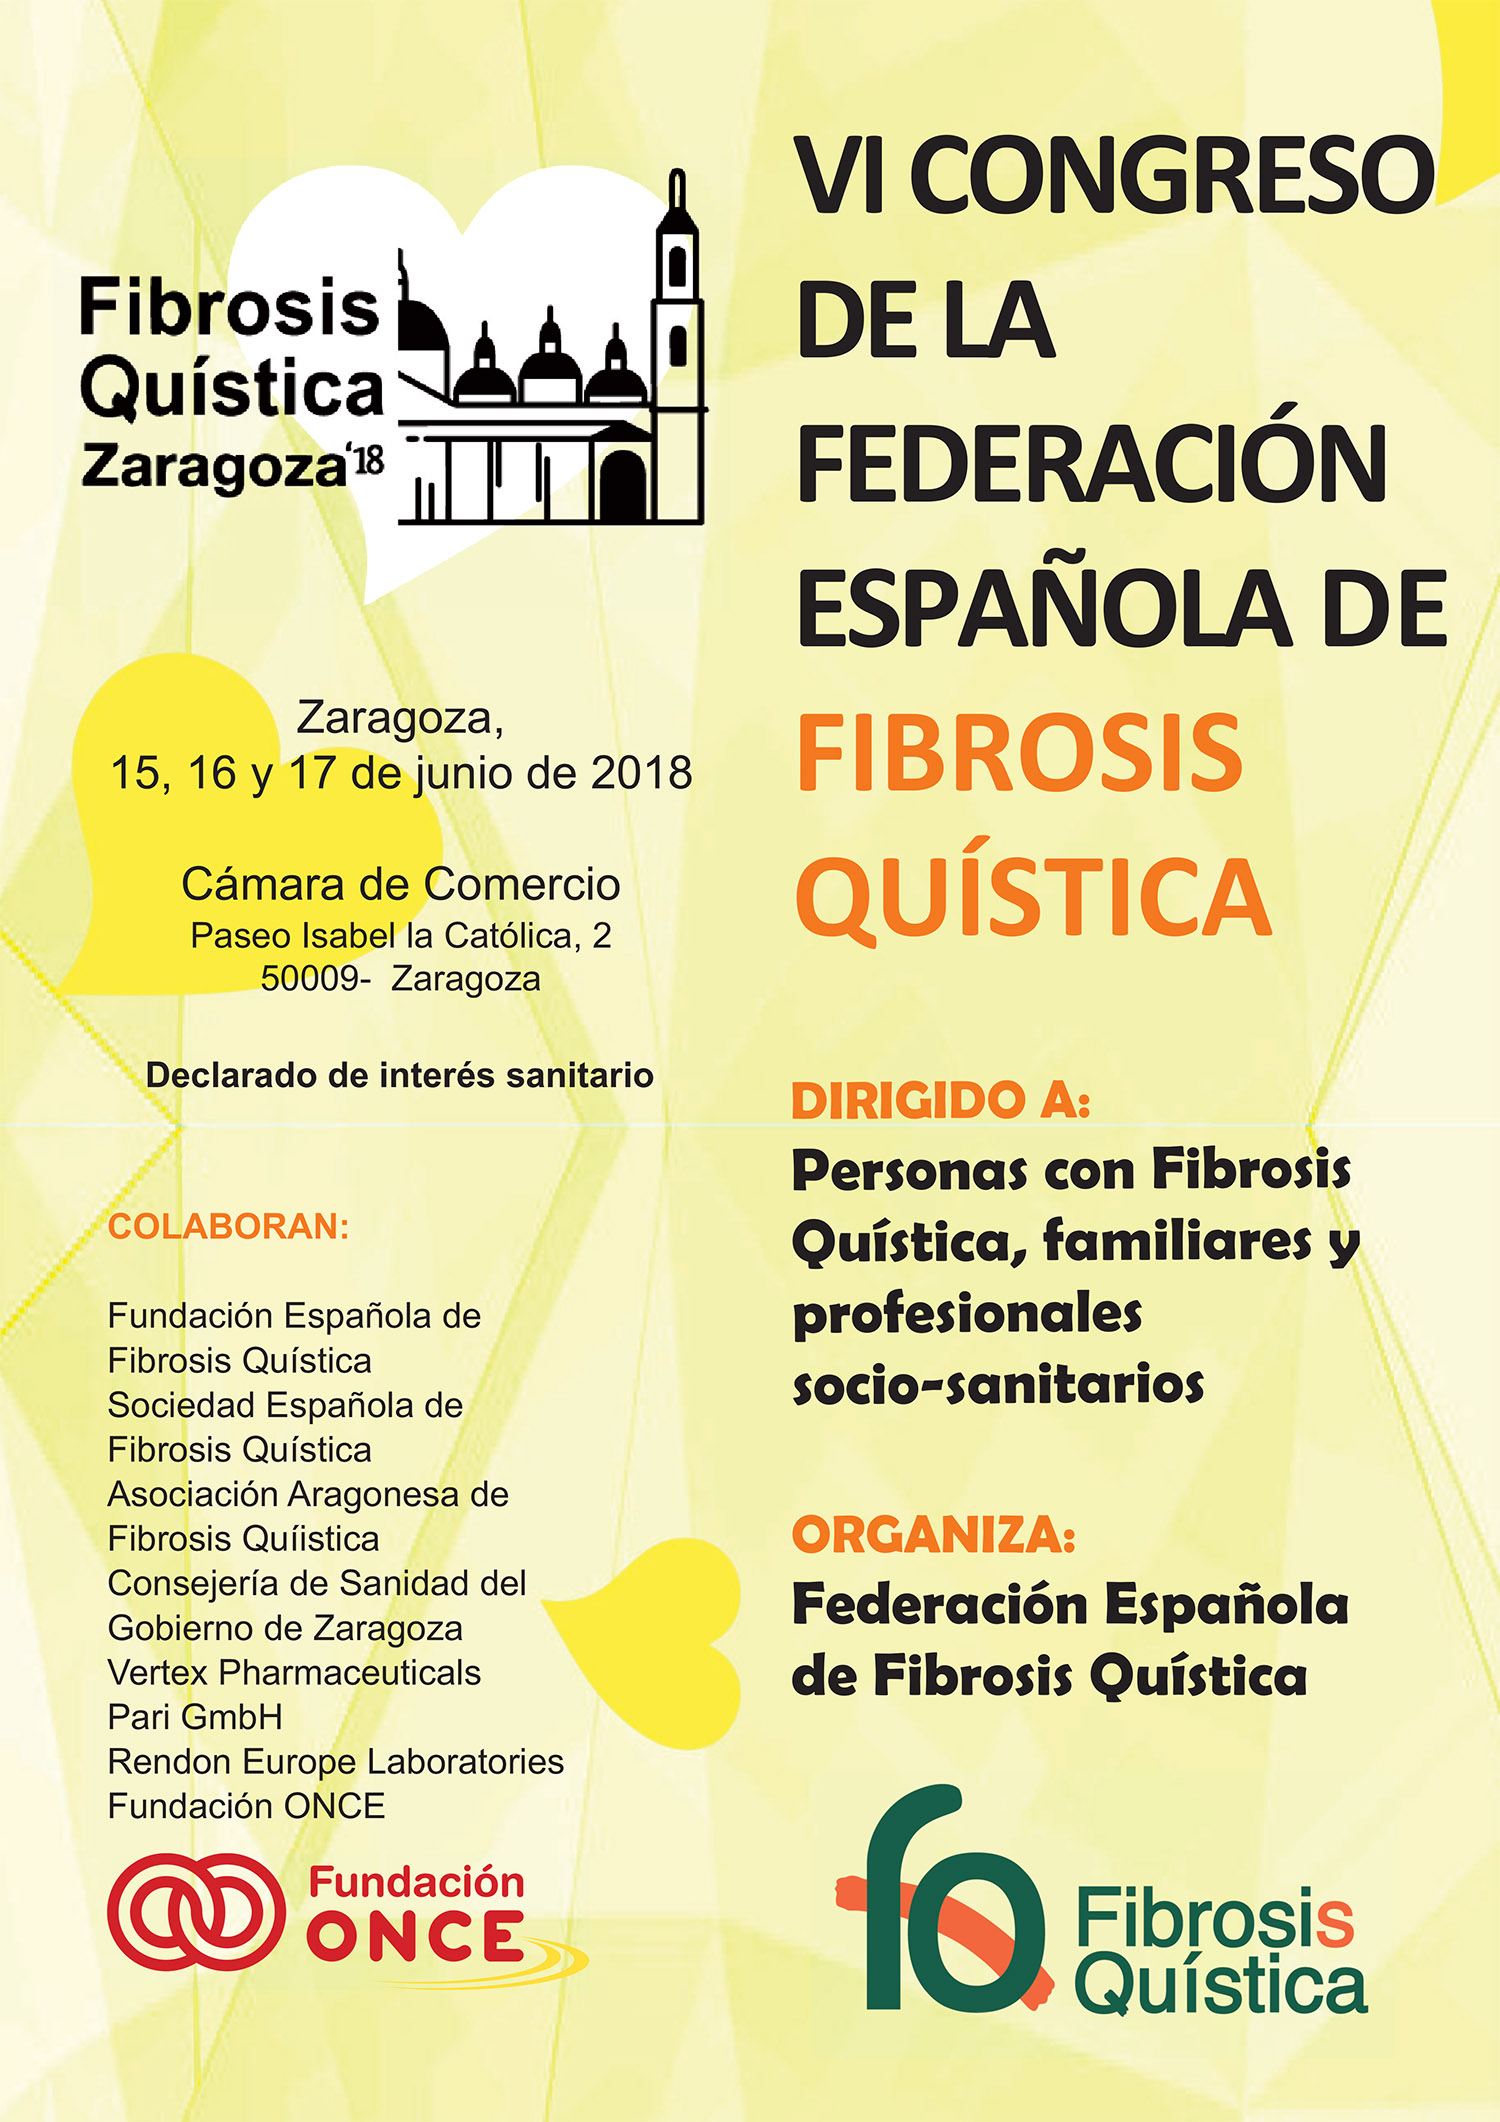 federacion española fibrosis quistica visita la web del vi congreso de la federacion espanola de fibrosis quistica